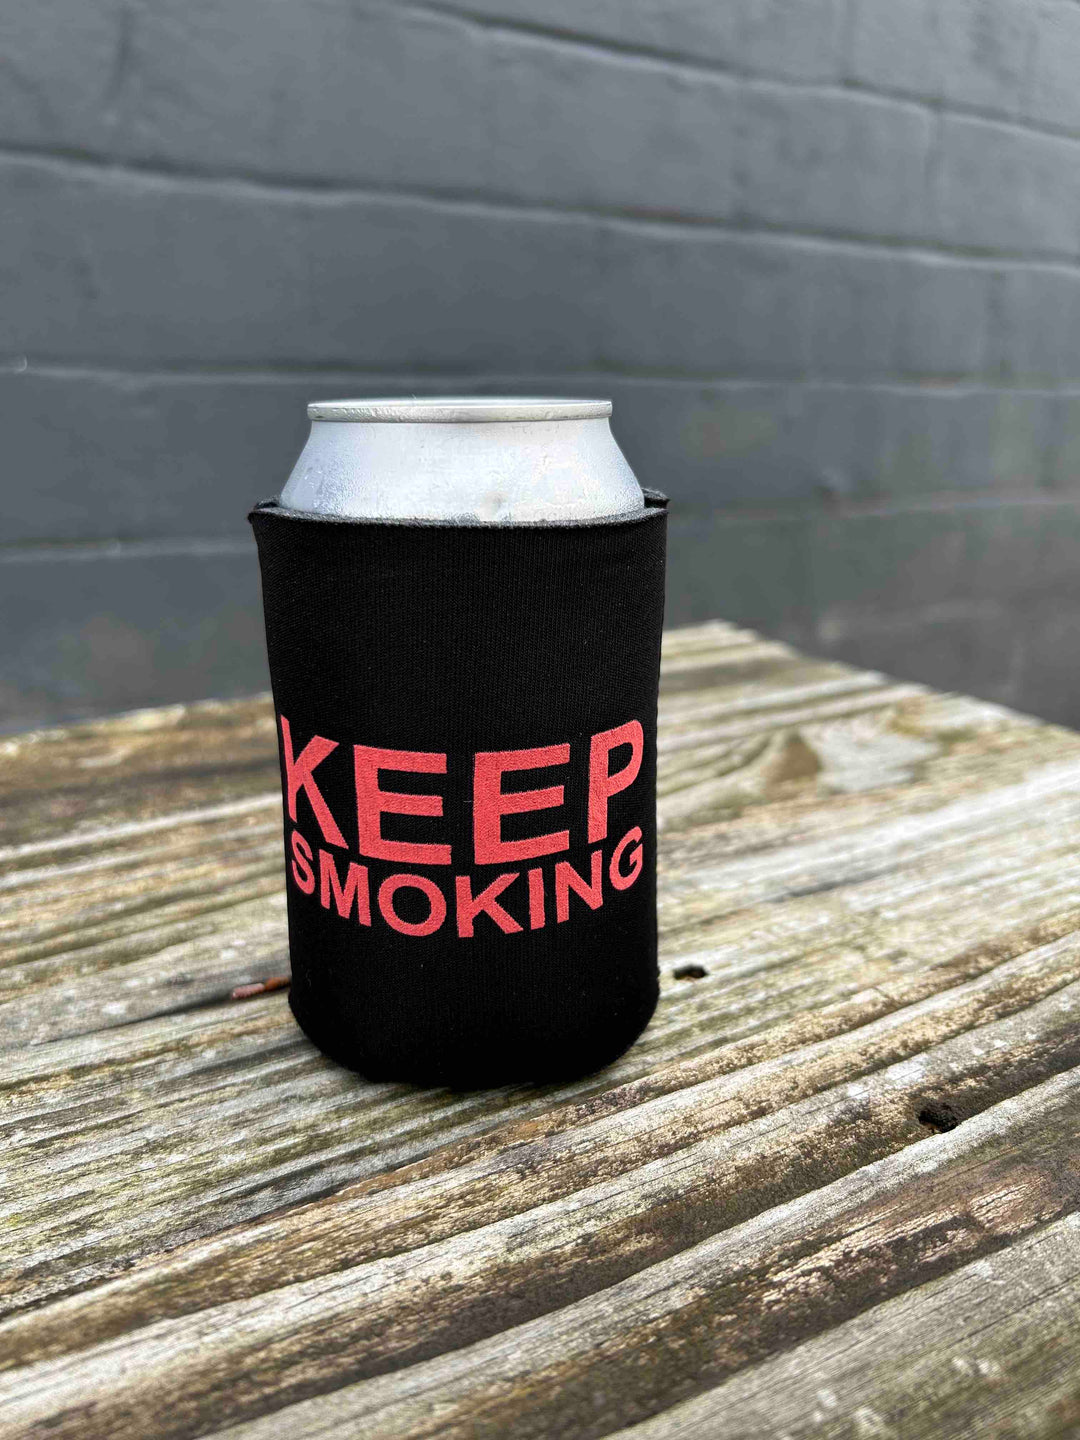 BanquetWorks/Keep Smoking Koozie